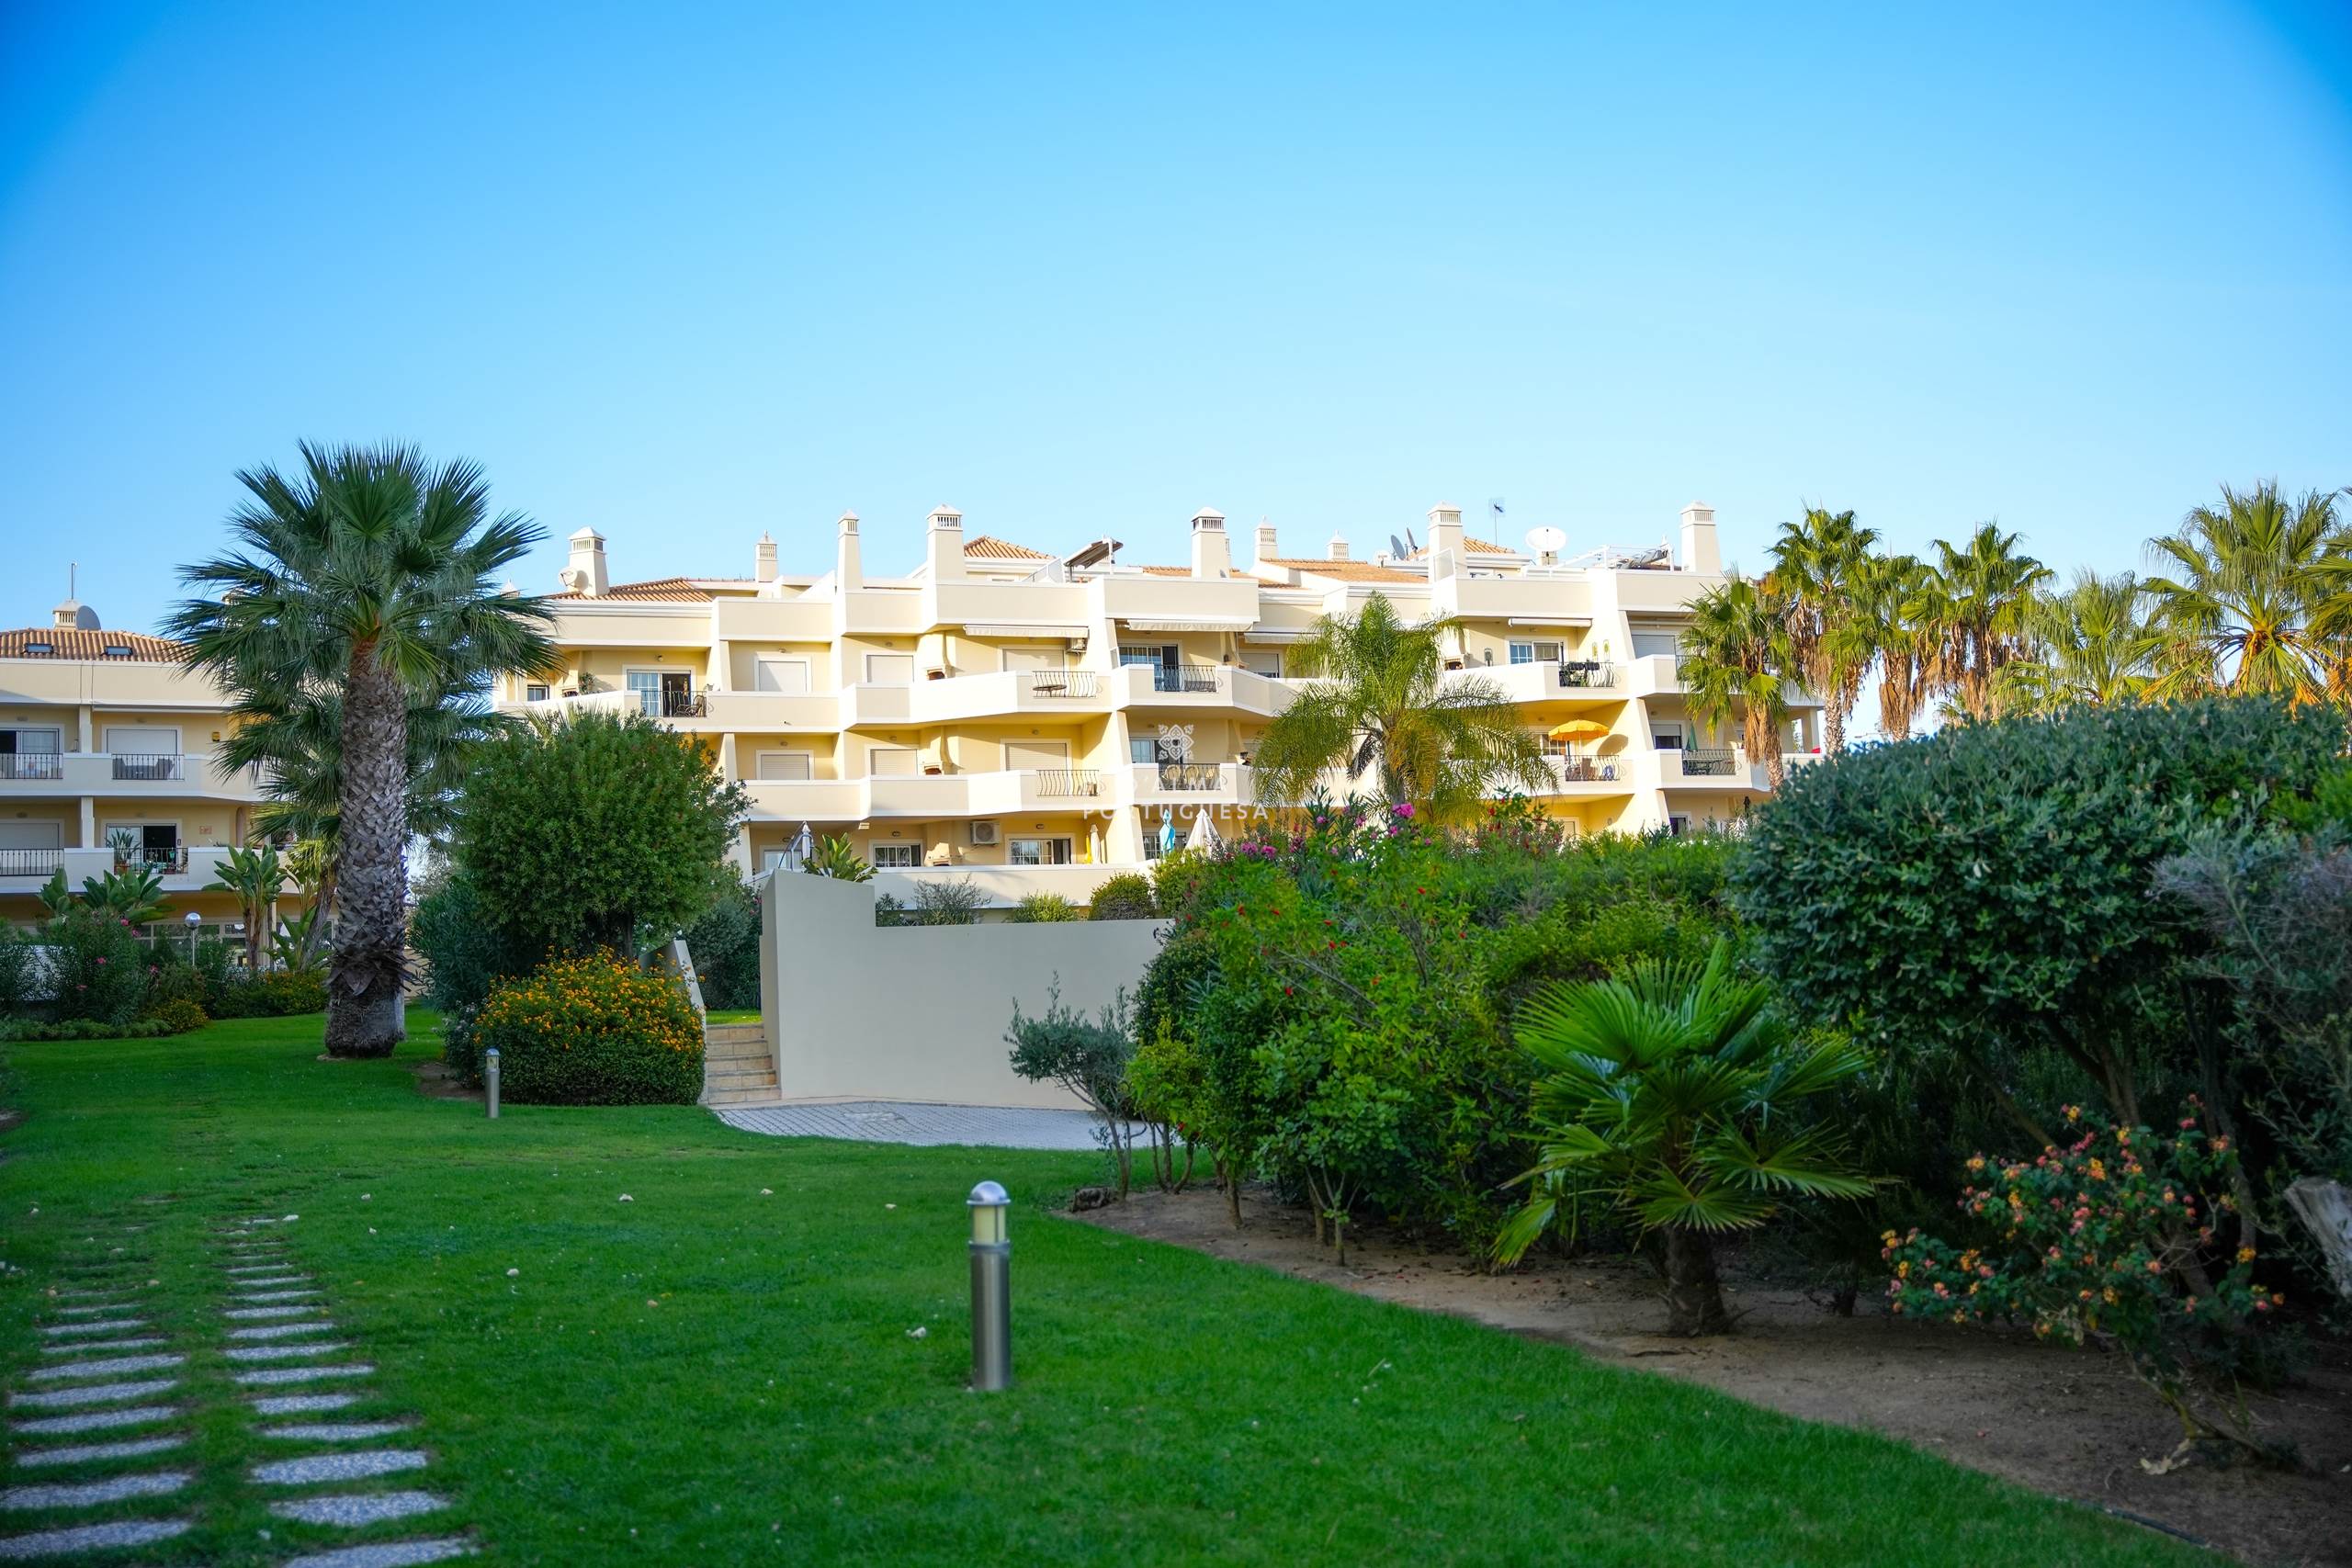 apartamento cerca de la playa,apartamento con garaje,apartamento de 3 dormitorios Galé,apartamento en condominio,apartamento con vista al mar